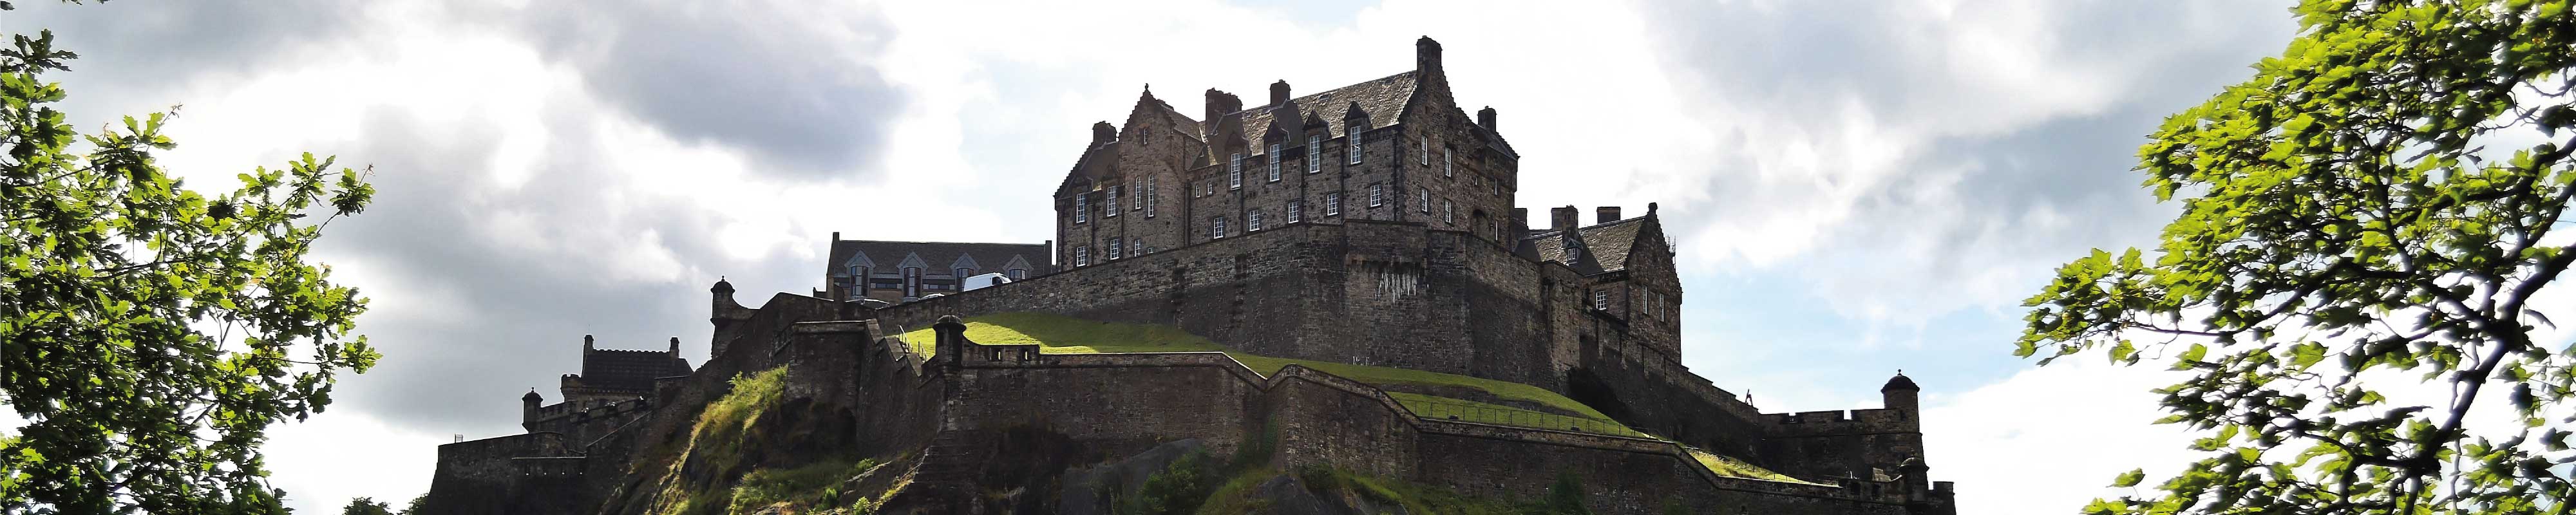 Consigna Equipaje | castillo de Edimburgo en Edimburgo - Nannybag